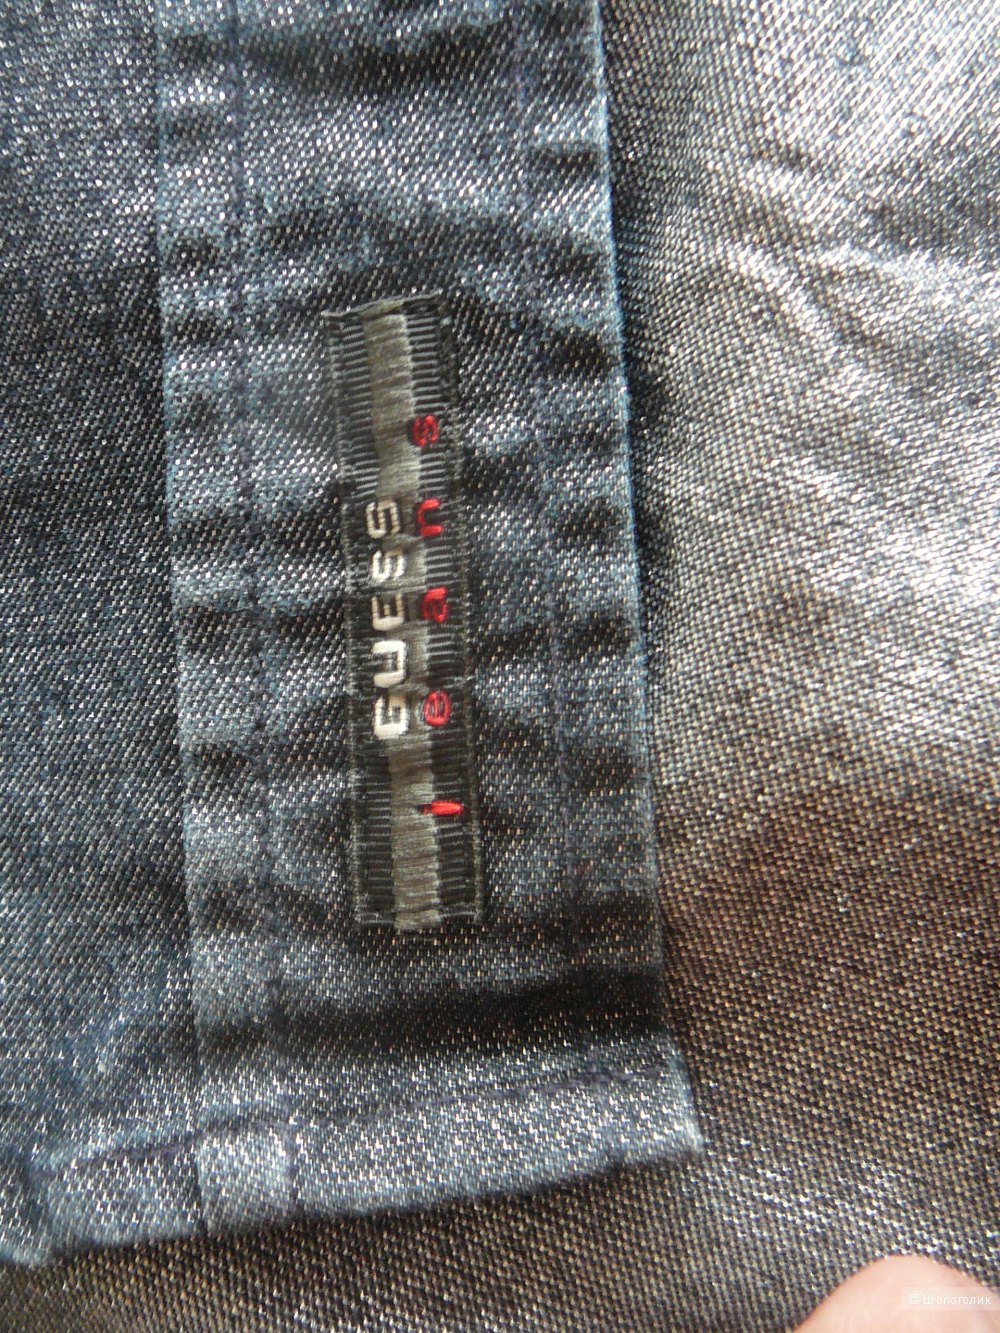 Стрейтч-рубашка под джинсу с переливающимся блеском GUESS р42